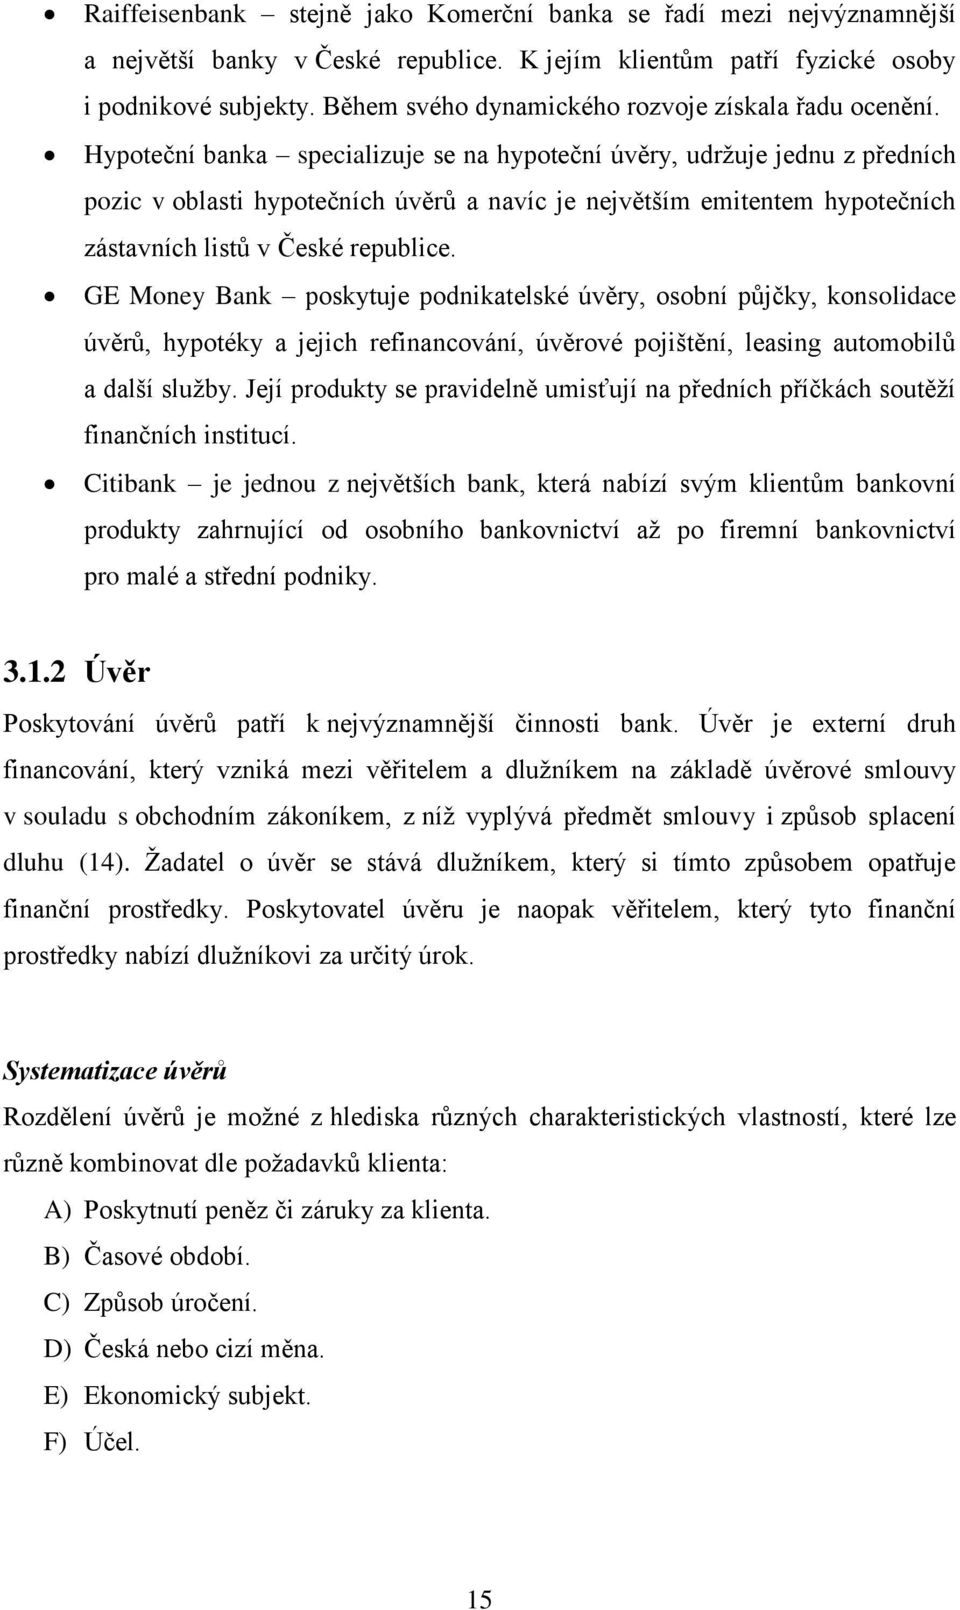 Hypoteční banka specializuje se na hypoteční úvěry, udržuje jednu z předních pozic v oblasti hypotečních úvěrů a navíc je největším emitentem hypotečních zástavních listů v České republice.